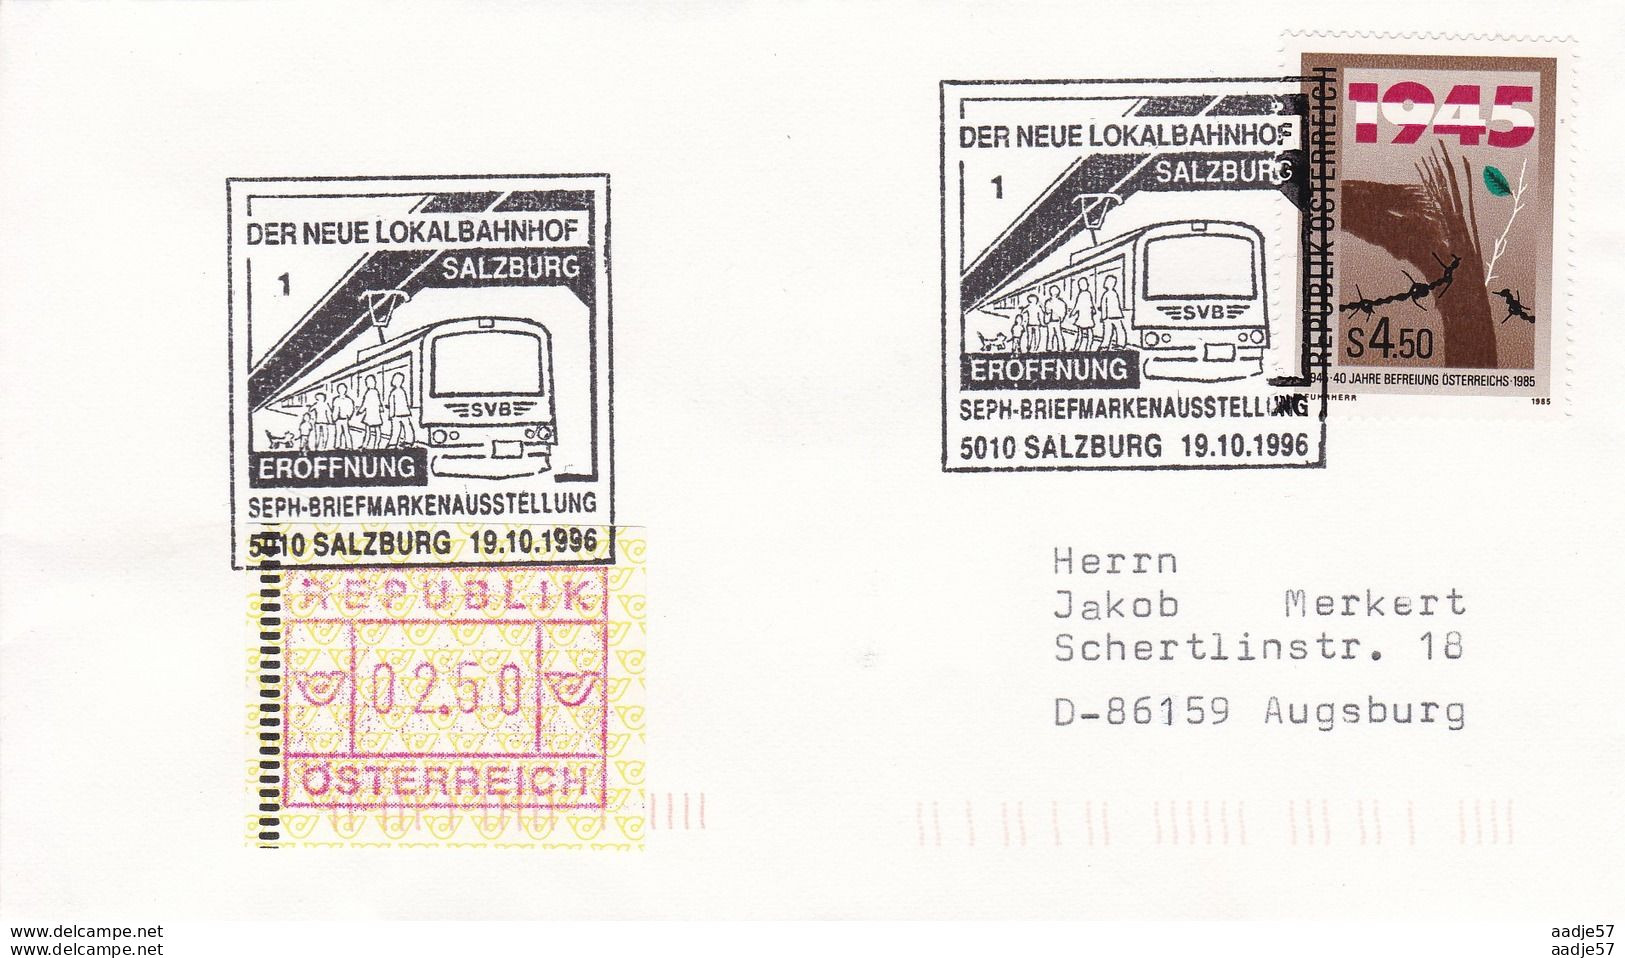 Austria Osterreich Spec Canc 19.10.1996 Eröffnung Der Neue Lokalbahnhof Salzburg - Tram